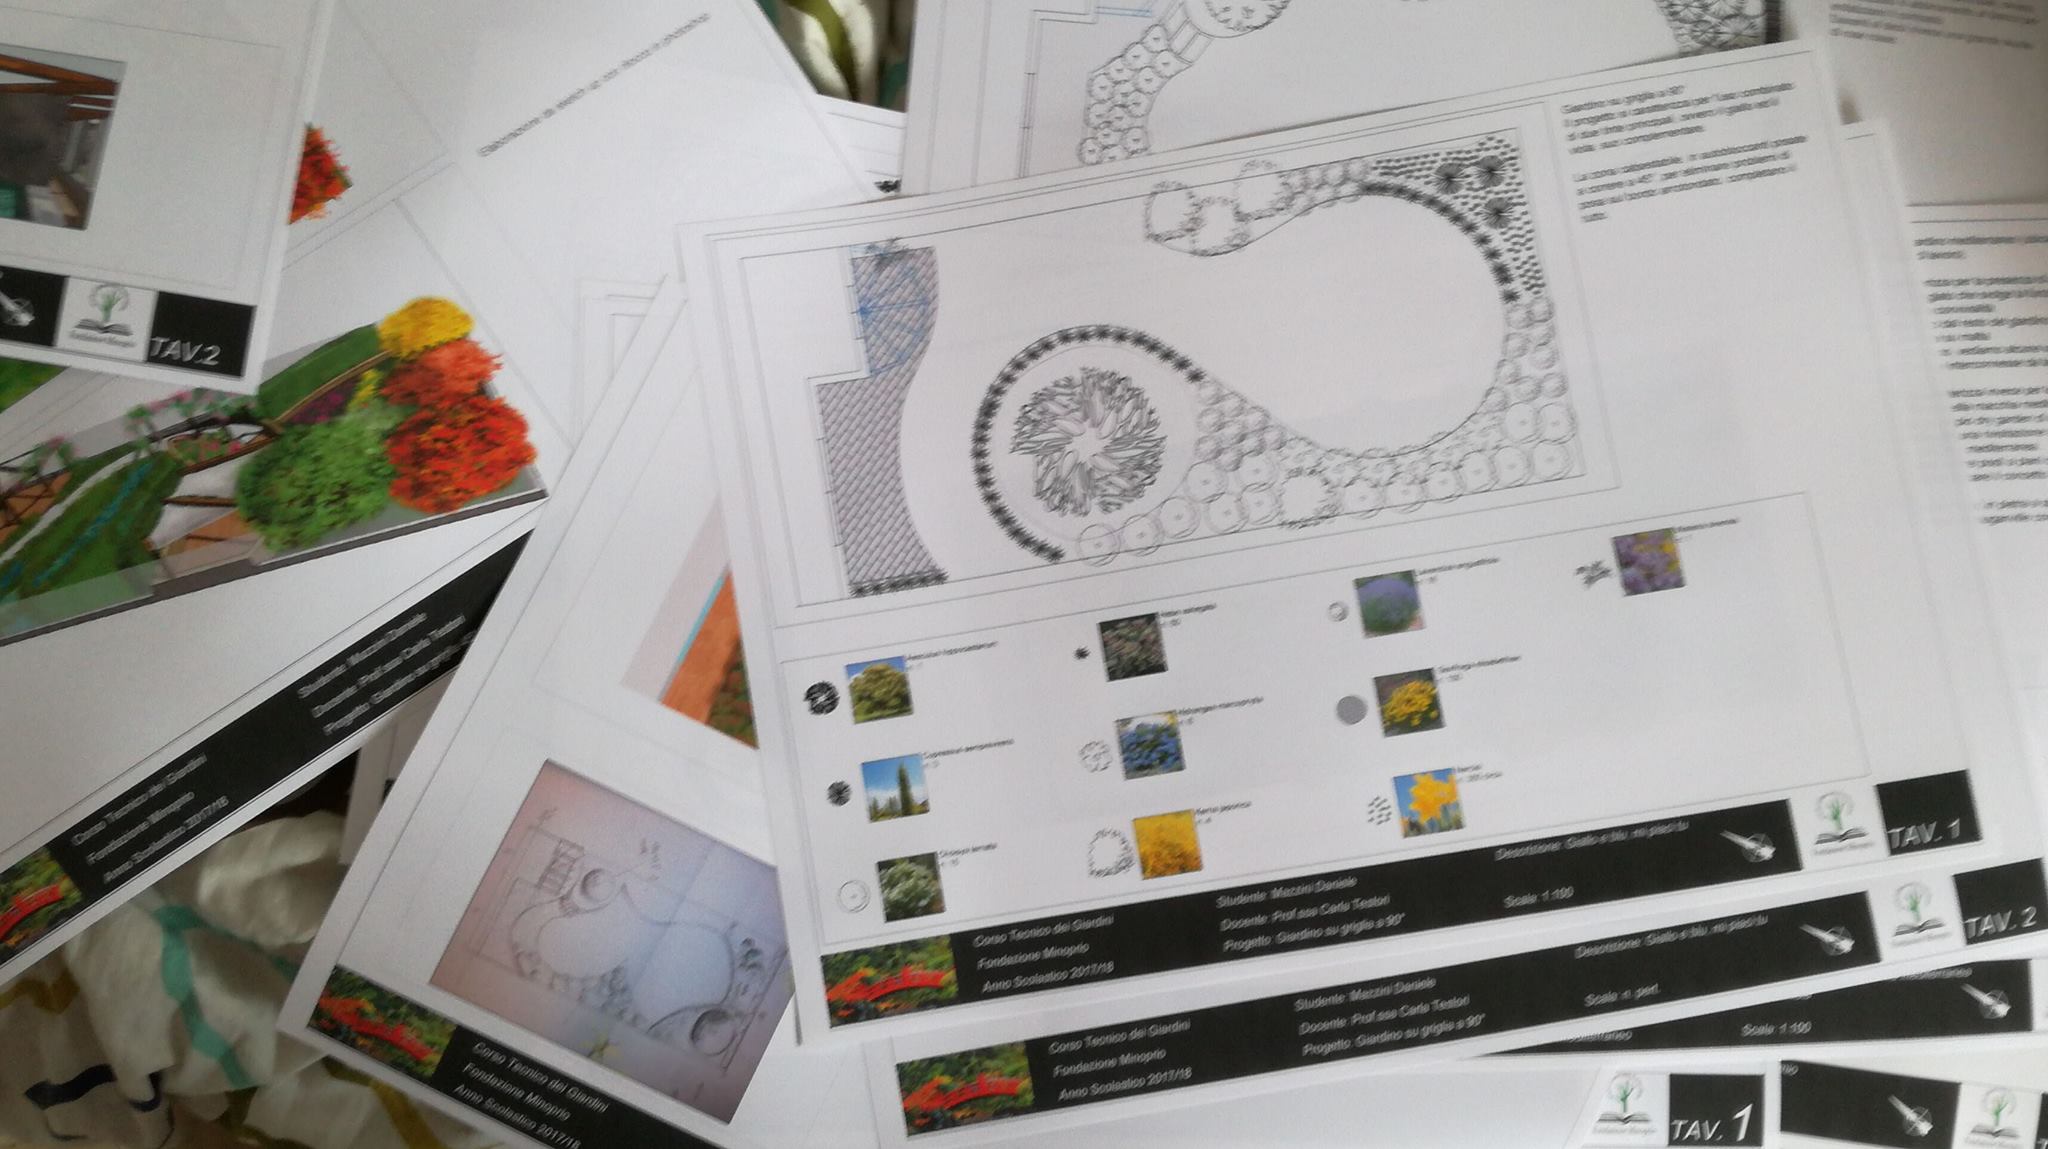 Paperi's garden | Progettazione, realizzazione e manutenzione giardini | Milano